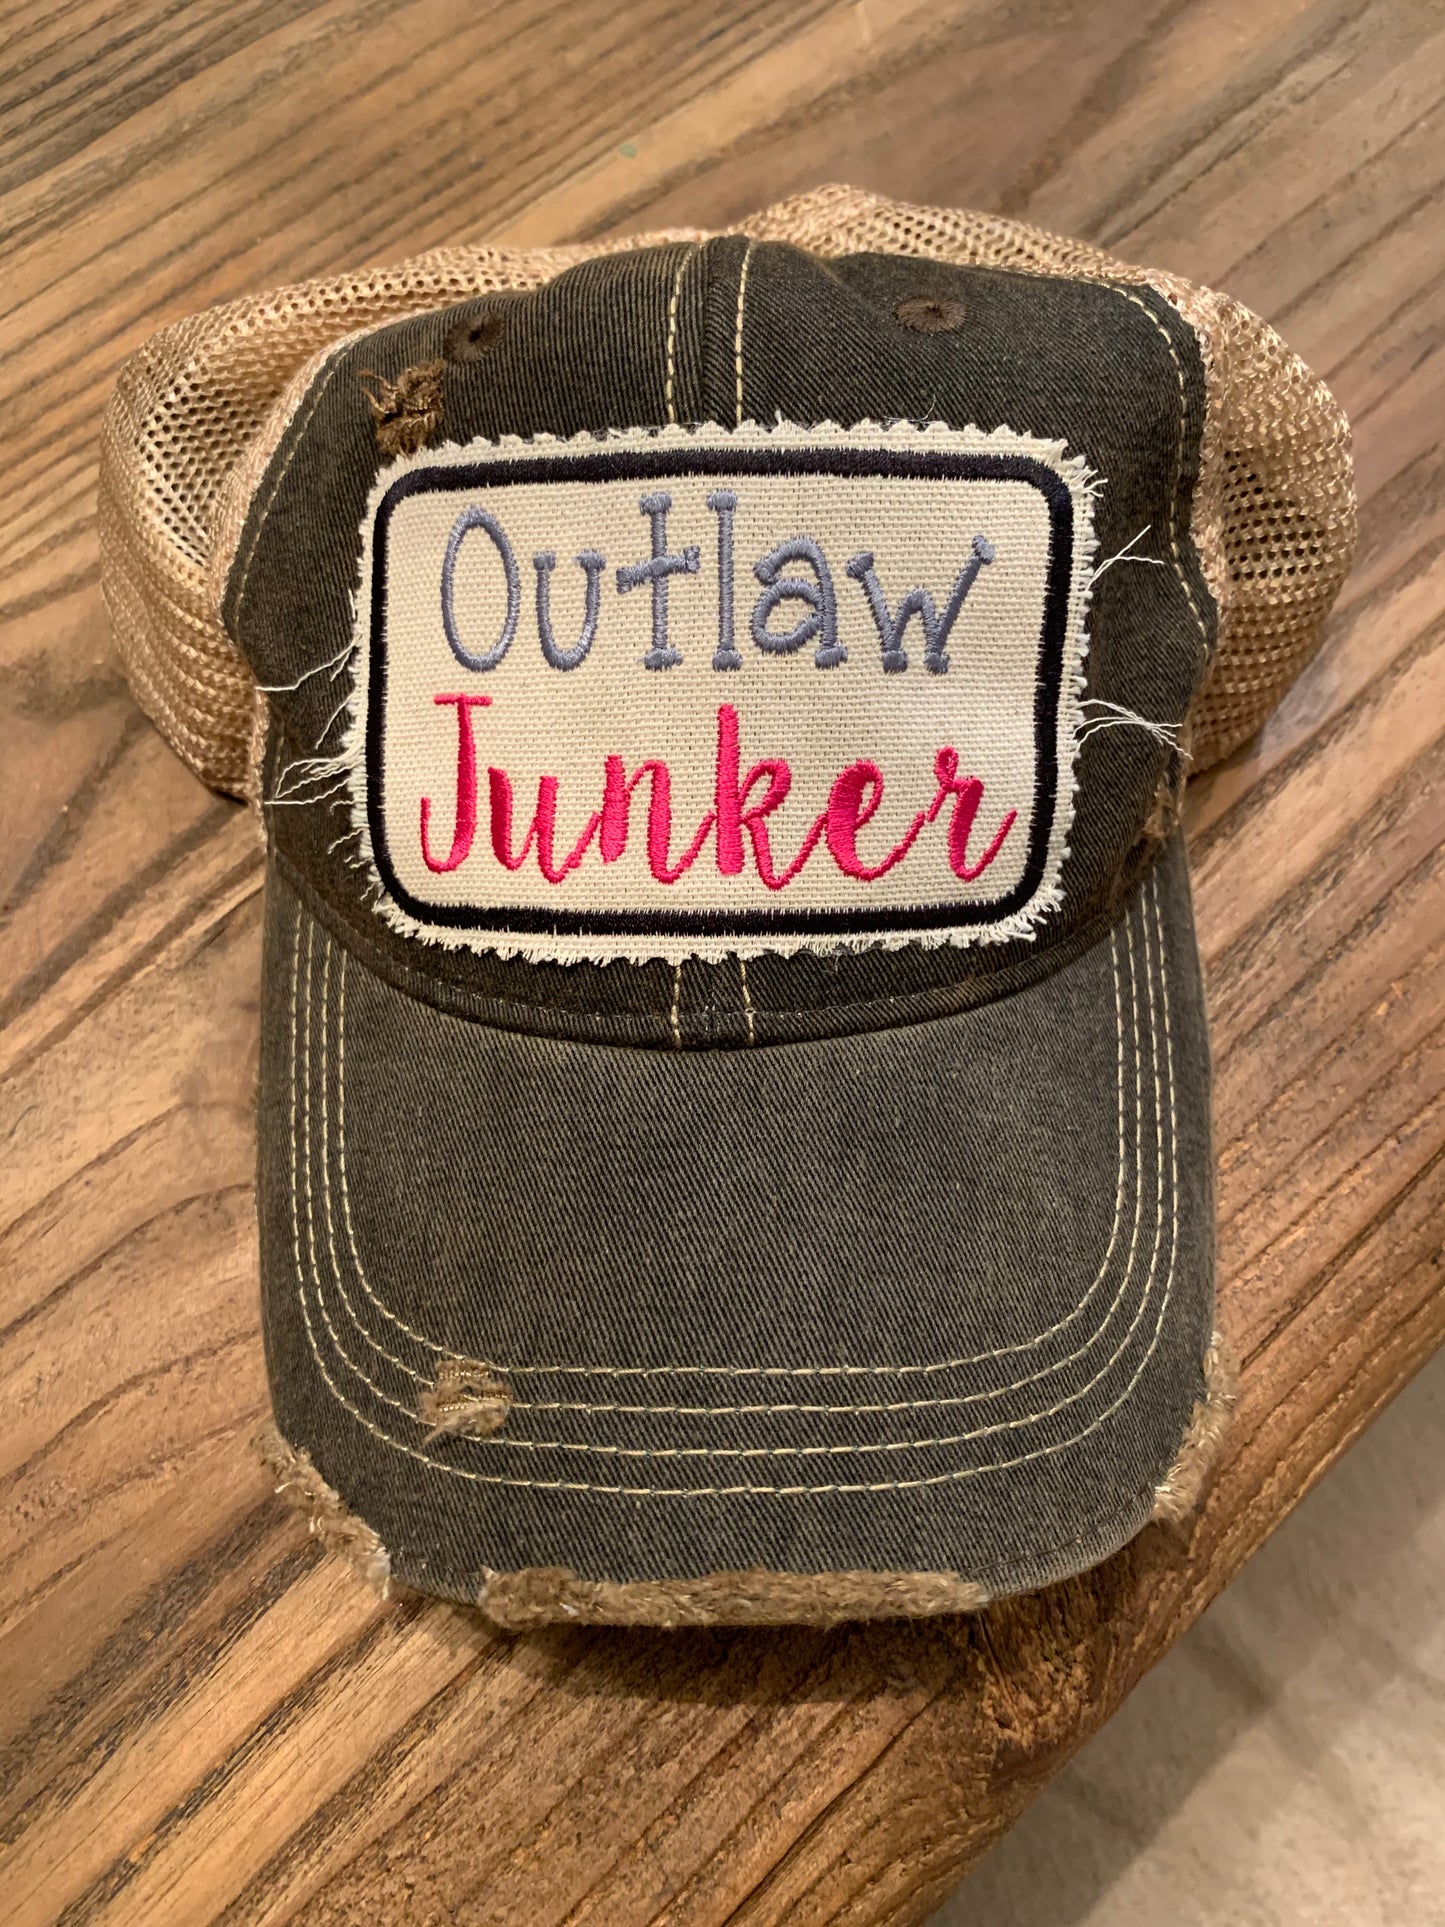 Outlaw Junker on black vintage distressed hat